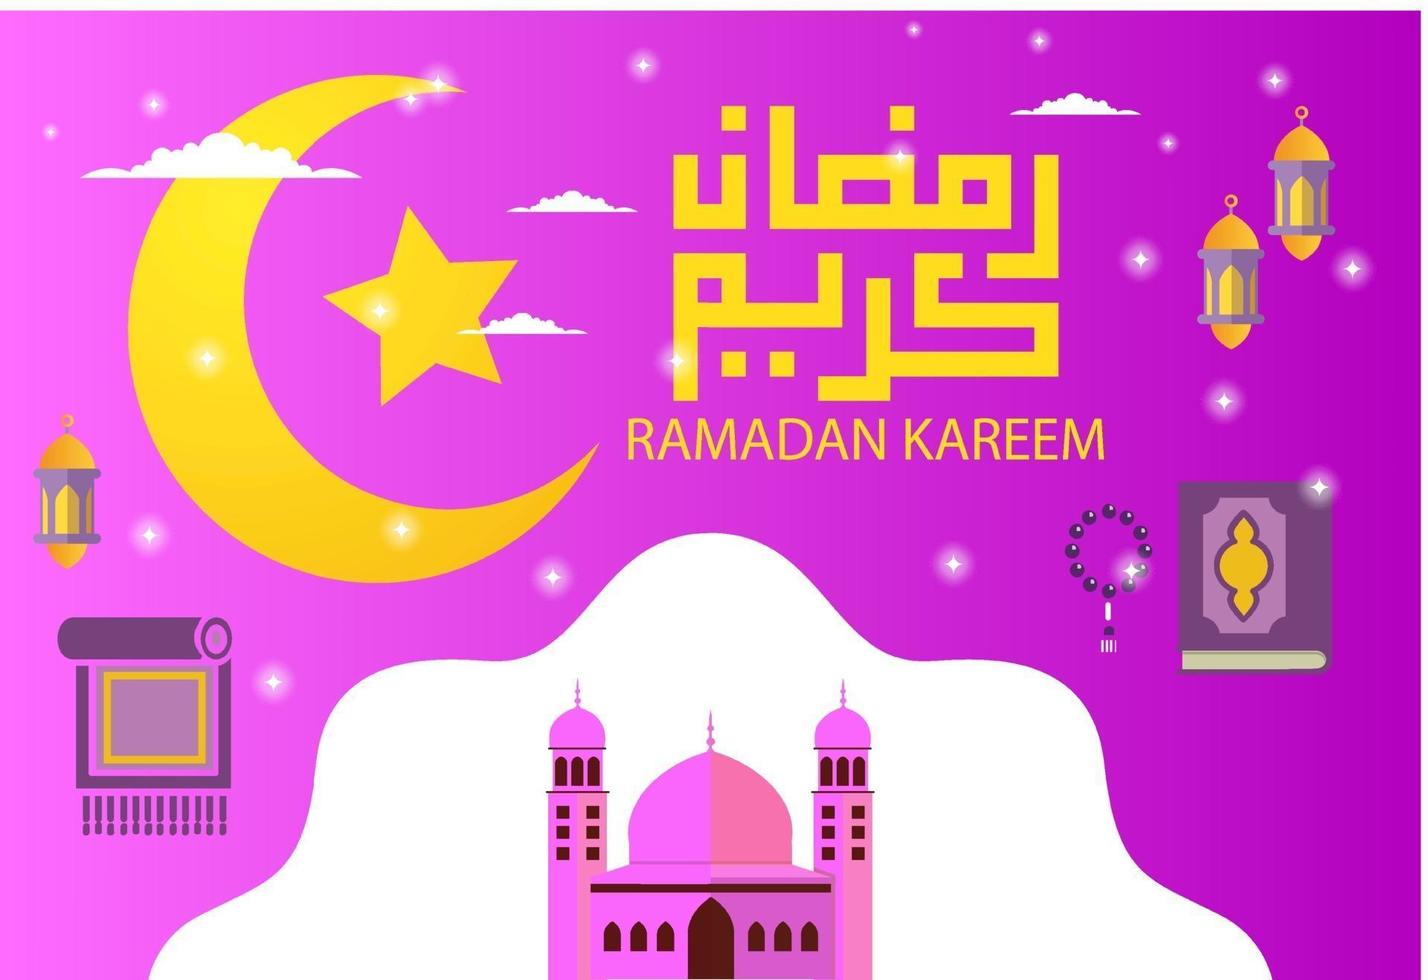 immagine vettoriale di illustrazione cufica araba per il ramadan kareem